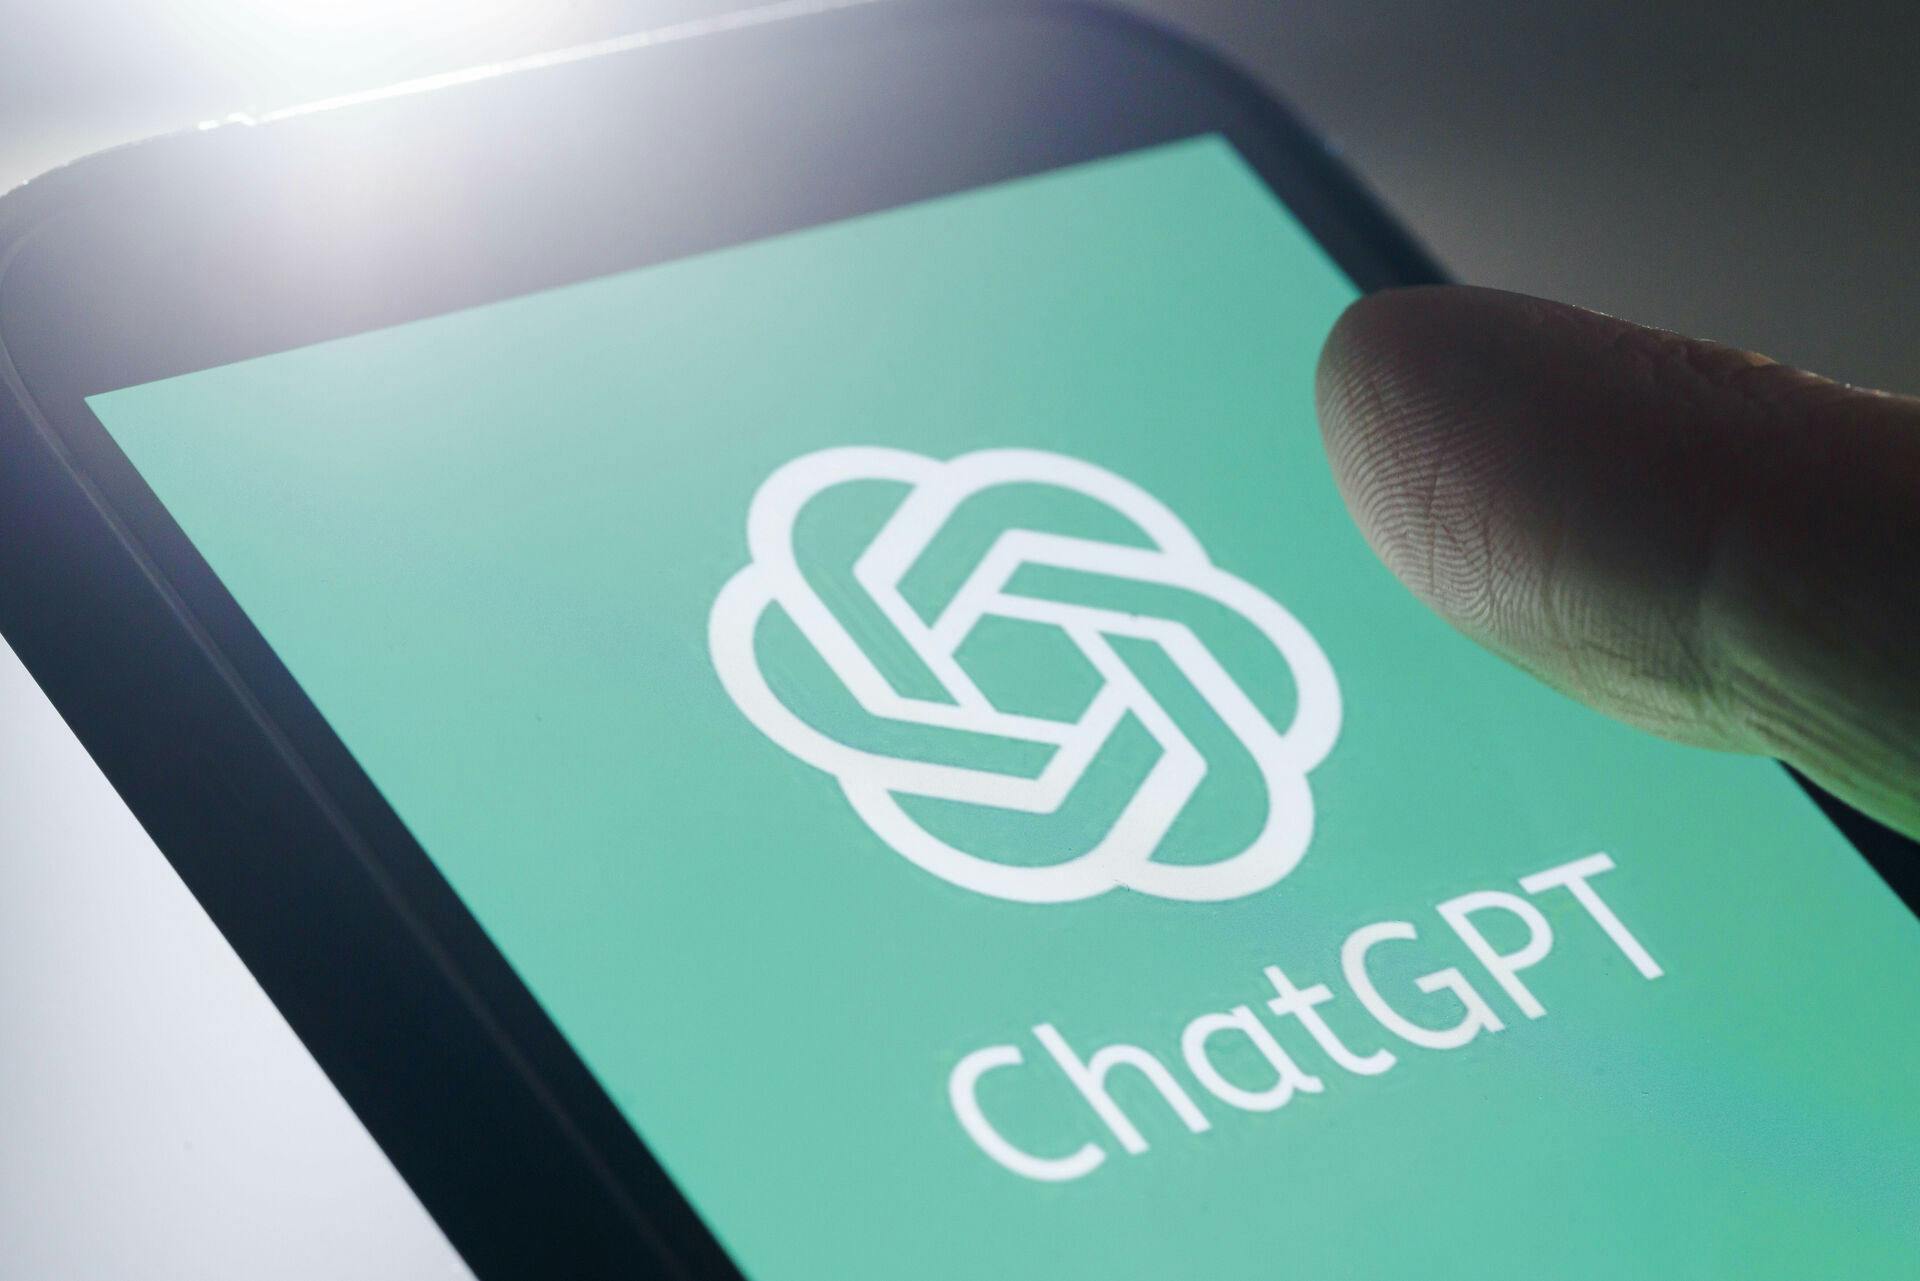 Det skal være forbudt at bruge ChatGPT i skolerne på en måde, der kan hjælpe eleverne med at få bedre karakterer.